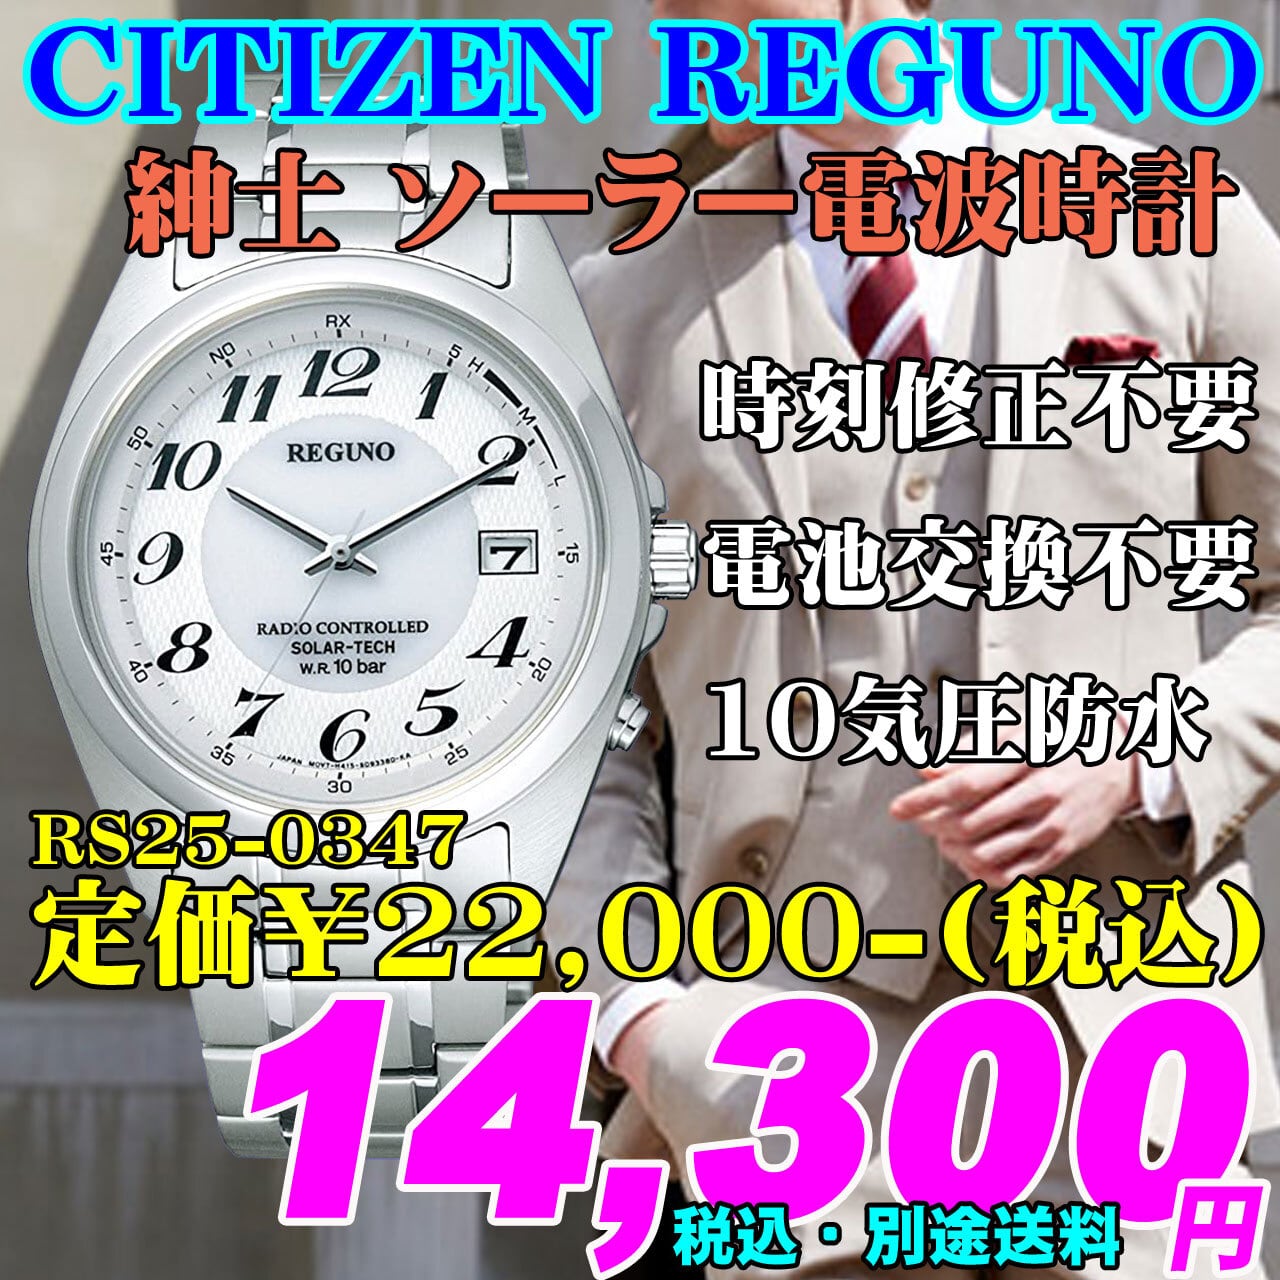 シチズン レグノ ソーラー電波 紳士 Rs25 0347 定価 22 000 税込 時計のうじいえ